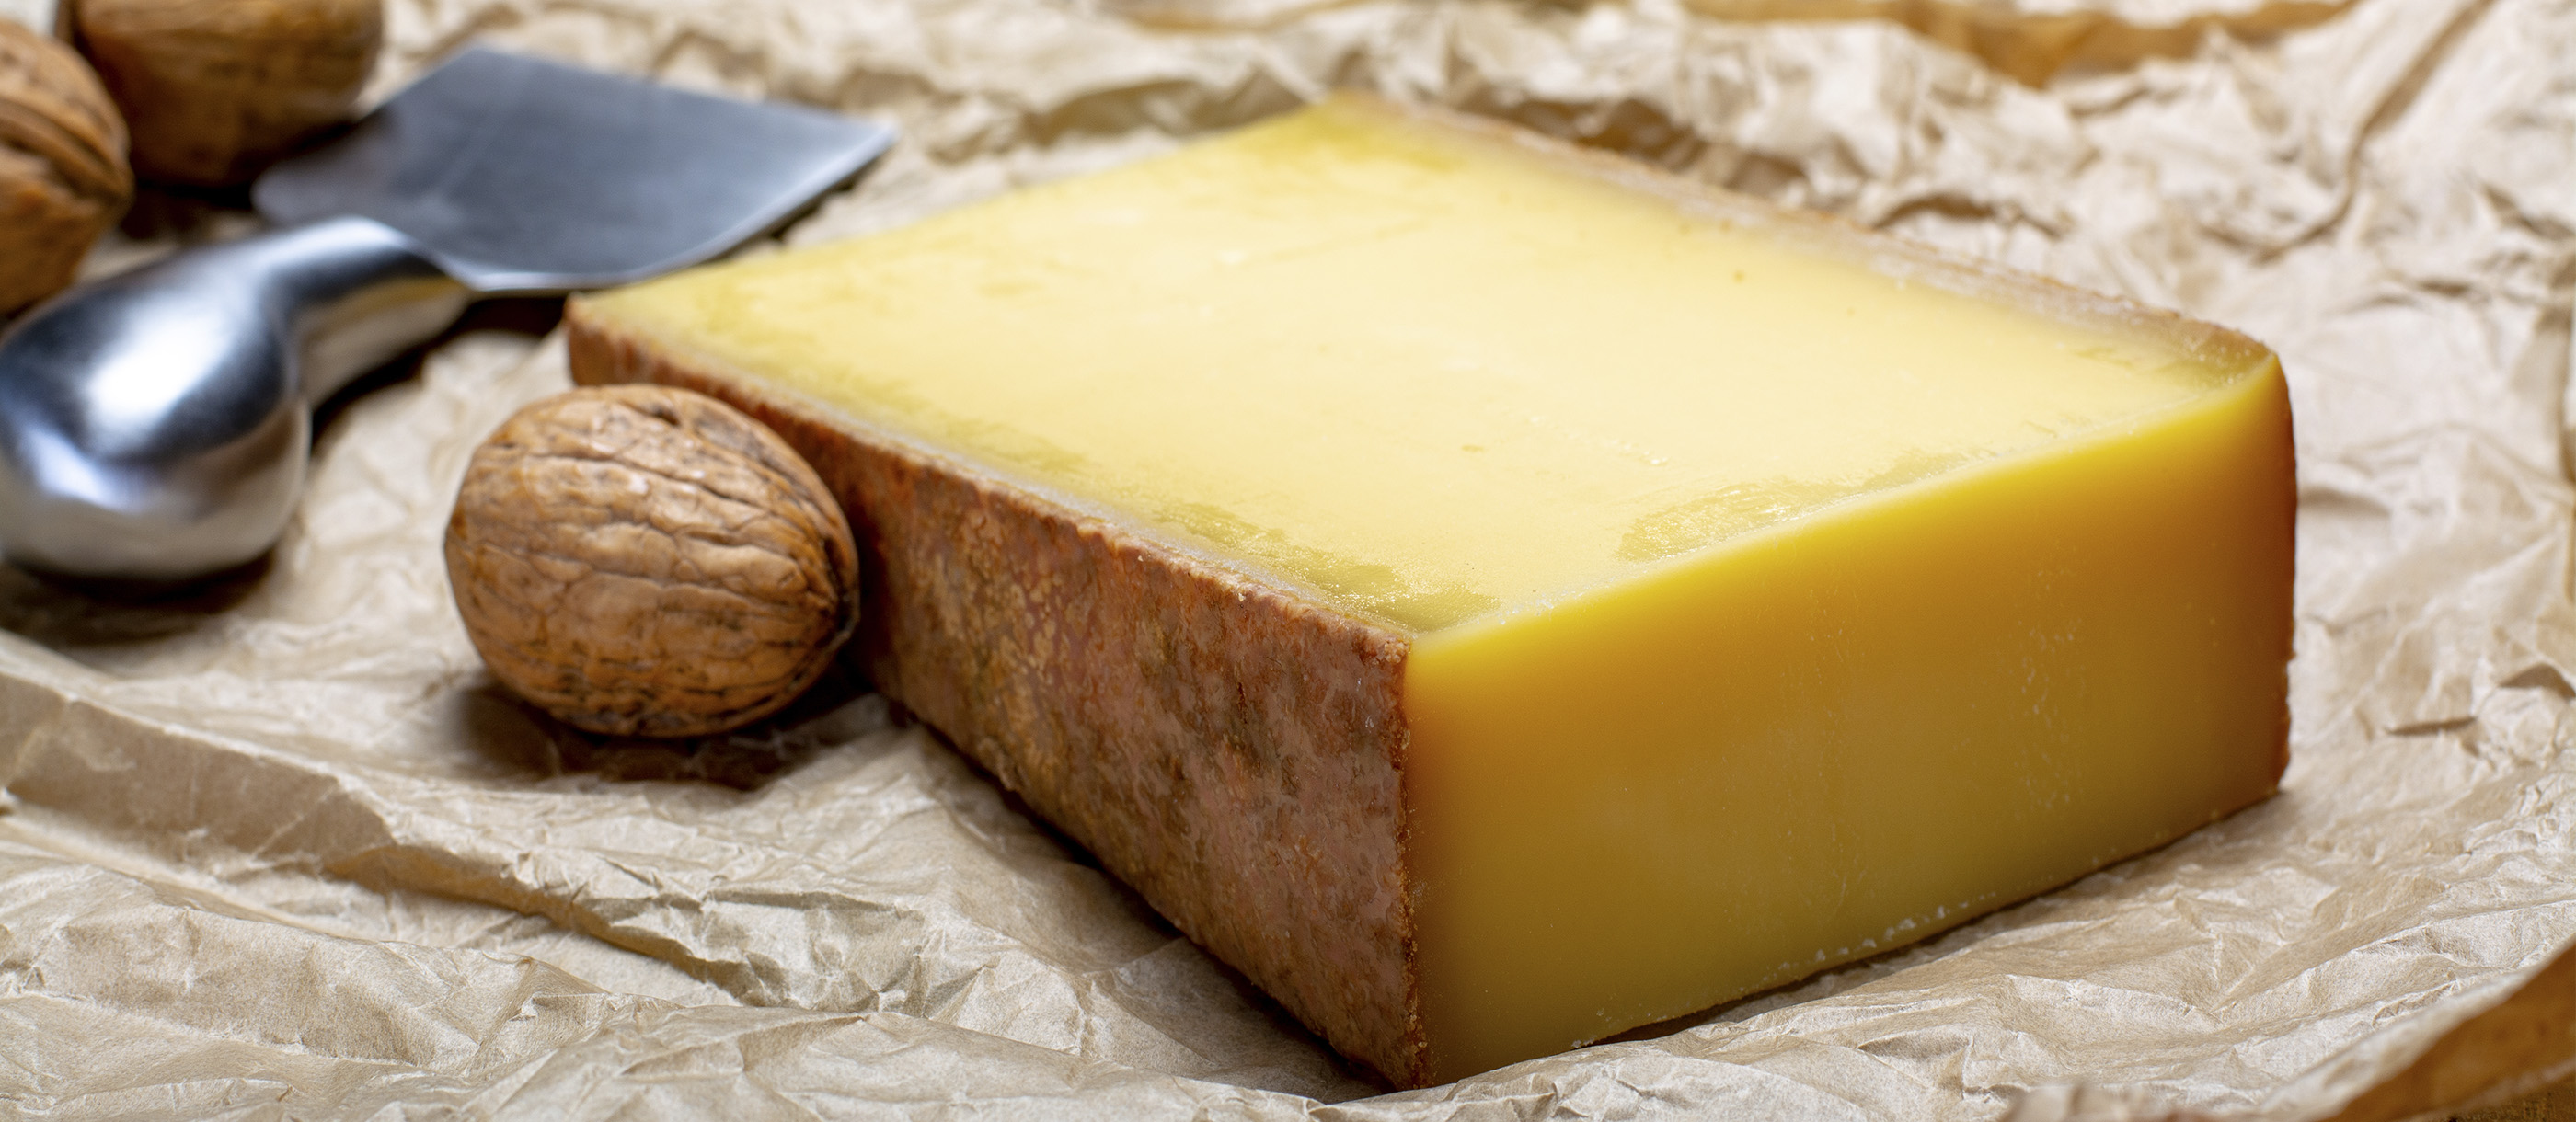 swish cheese